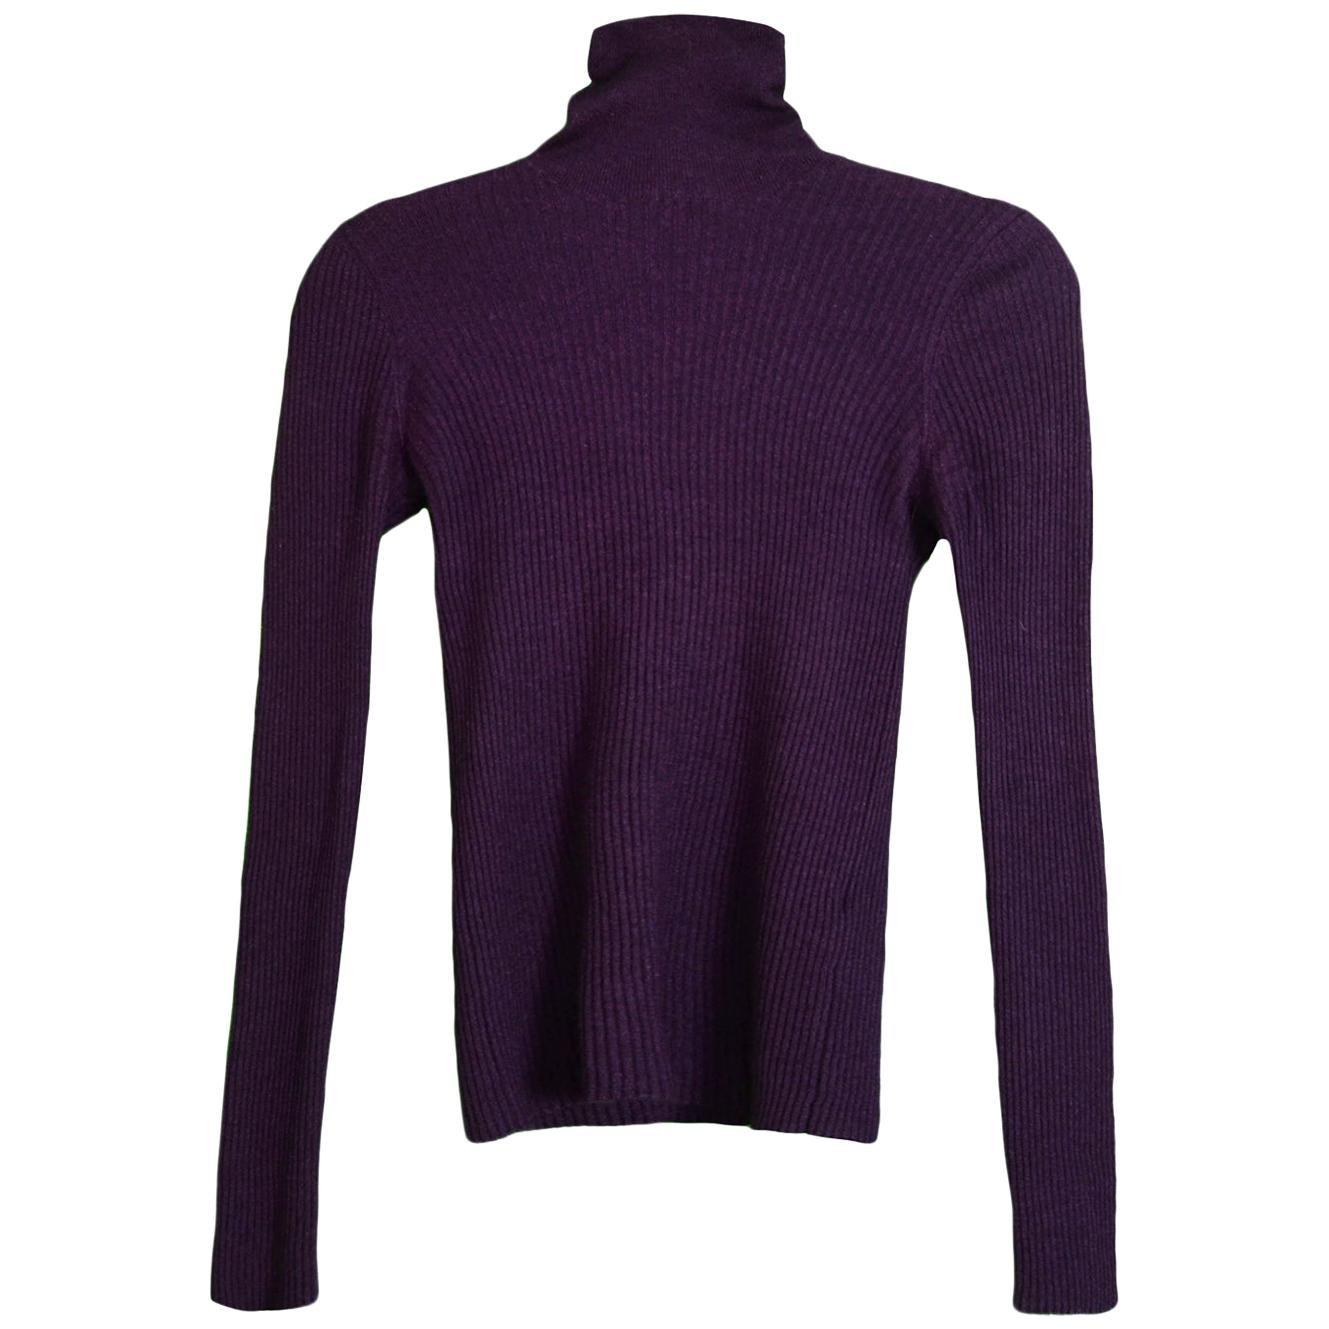 Chanel Purple Cashmere Blend Long Sleeve Turtleneck Sweater w/ CC Buttons sz 38